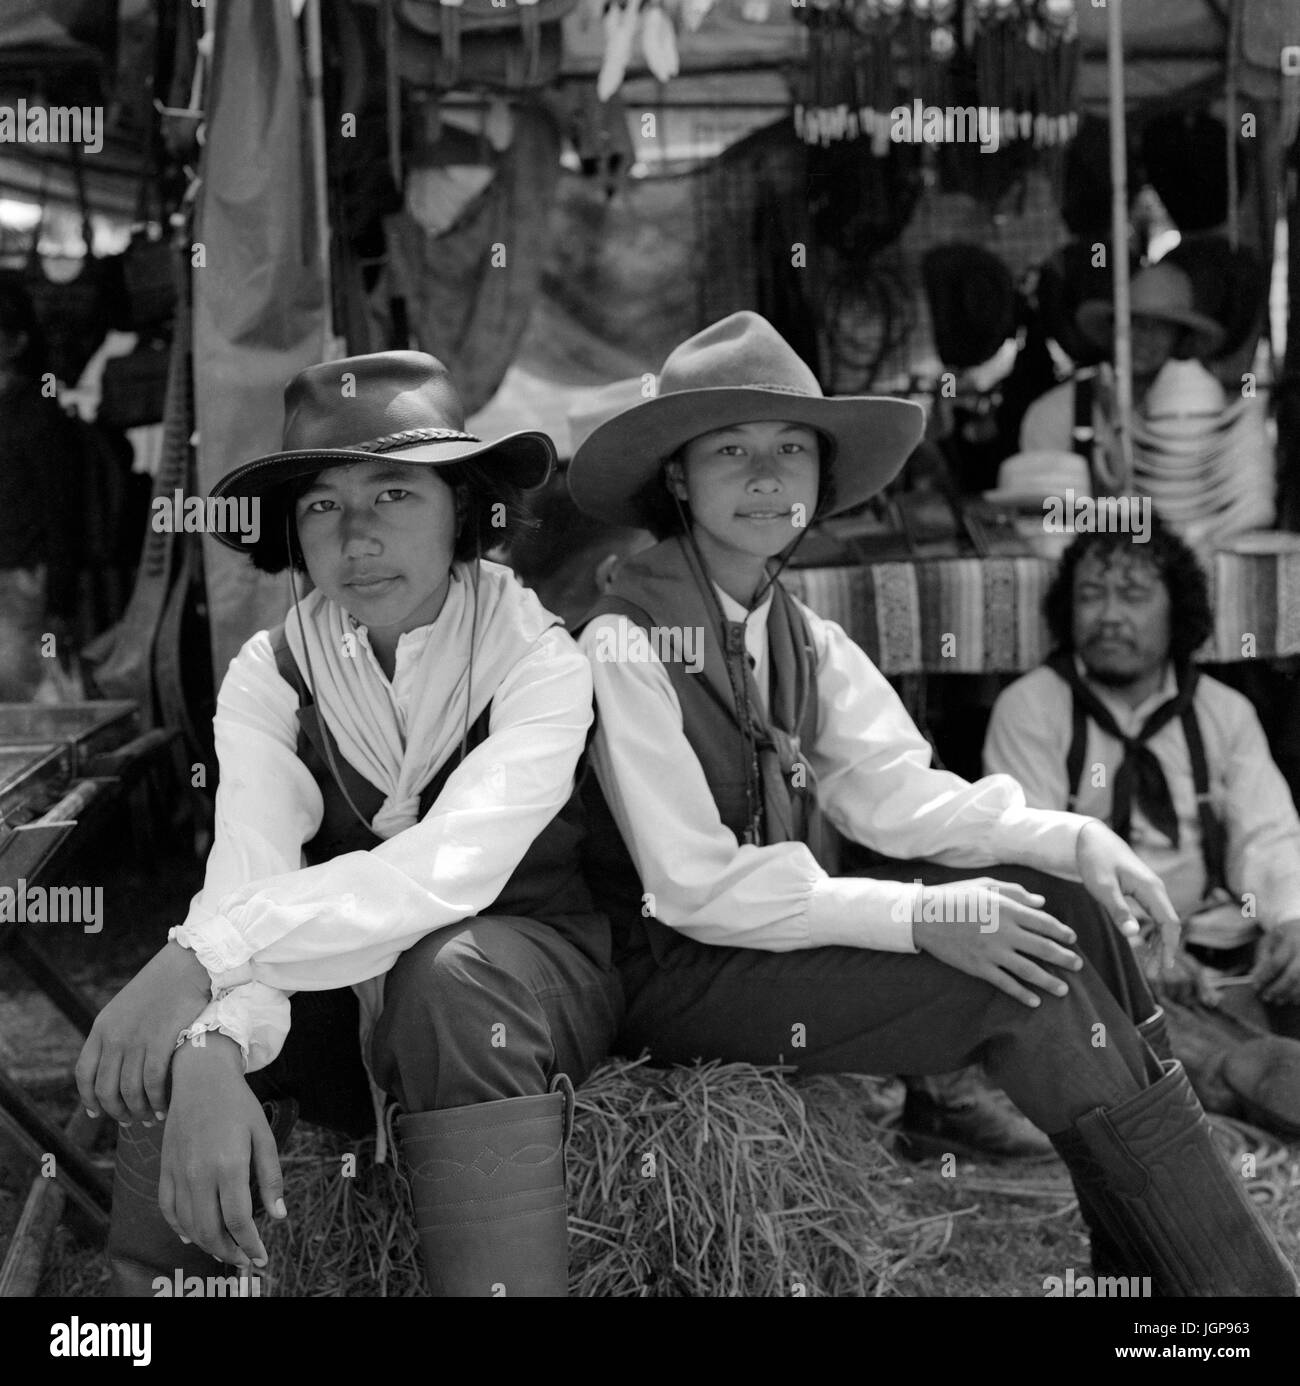 Schwarz-Weiß-Porträt von zwei jungen thailändischen Mädchen in westlicher Cowgirls-Kleidung bei einer Biker-Rallye. Südostasien. Schwarzweißfotografie Stockfoto